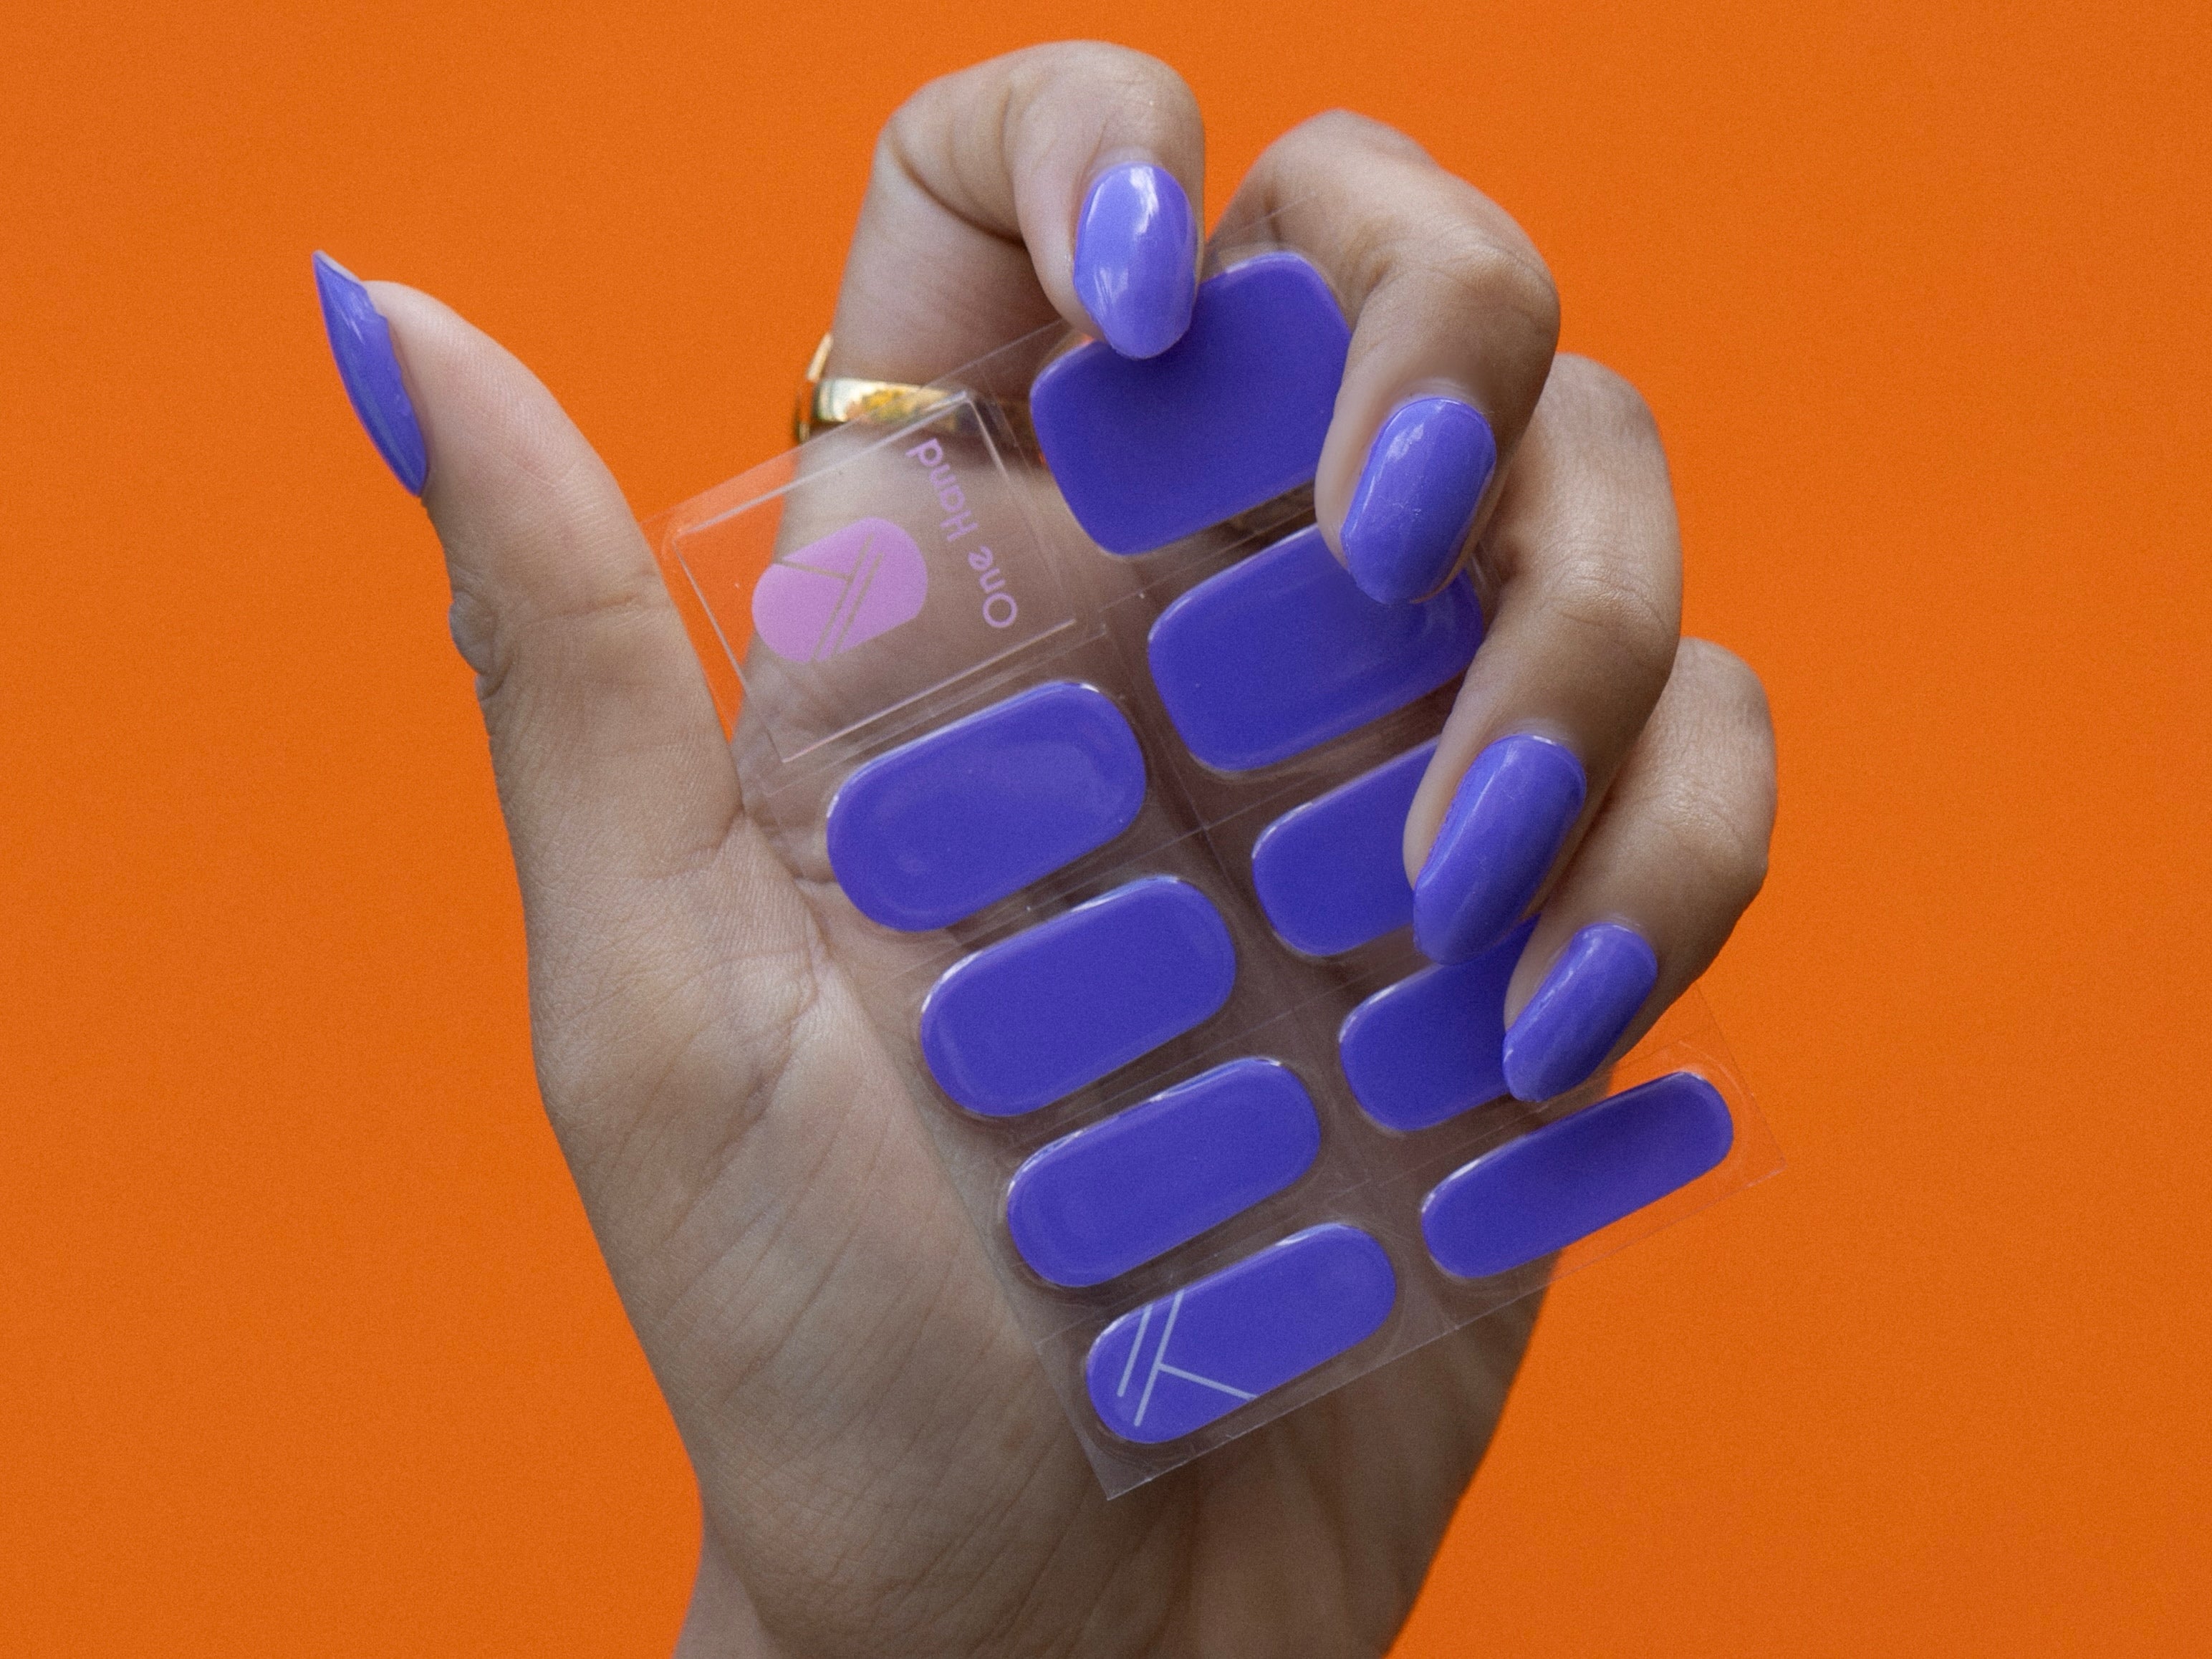 Smurfenijs Maniac gellak stickers Manicure solid Purple sheet